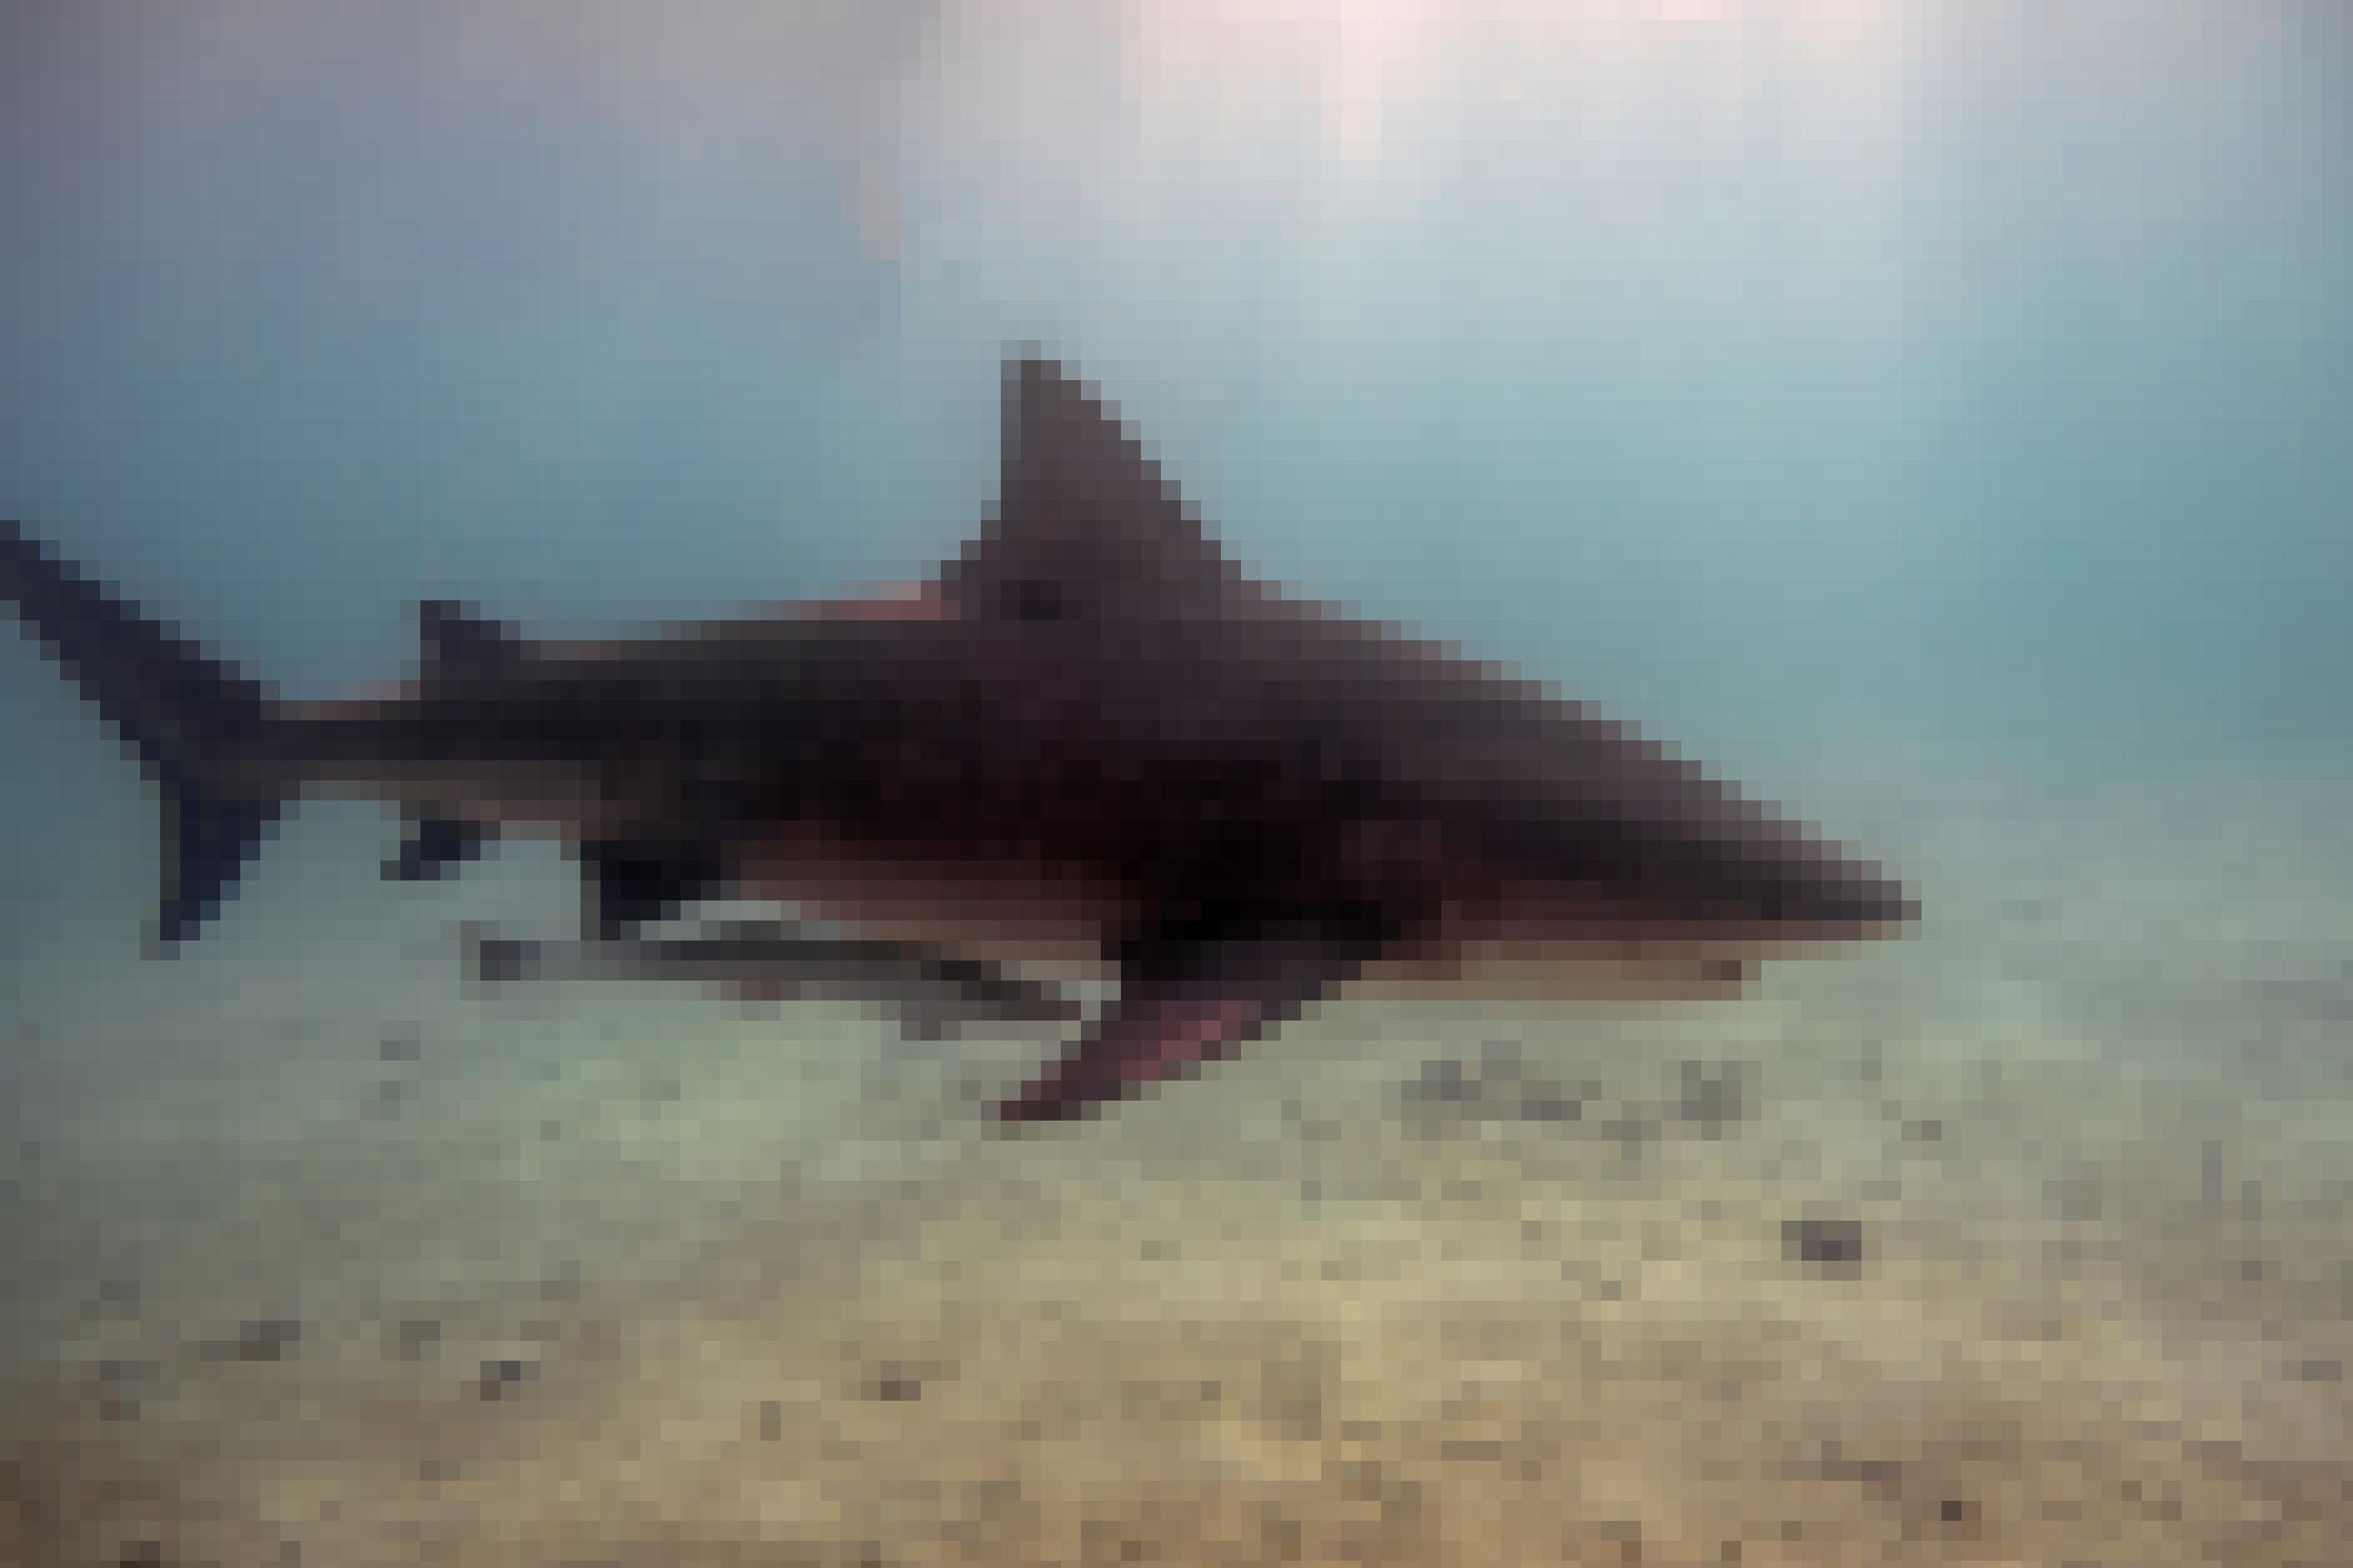 Farbfoto eines Bullenhais in Seitansicht unter Wasser. Das Tier ist oben dunkel gefärbt mit hellem Bauch..